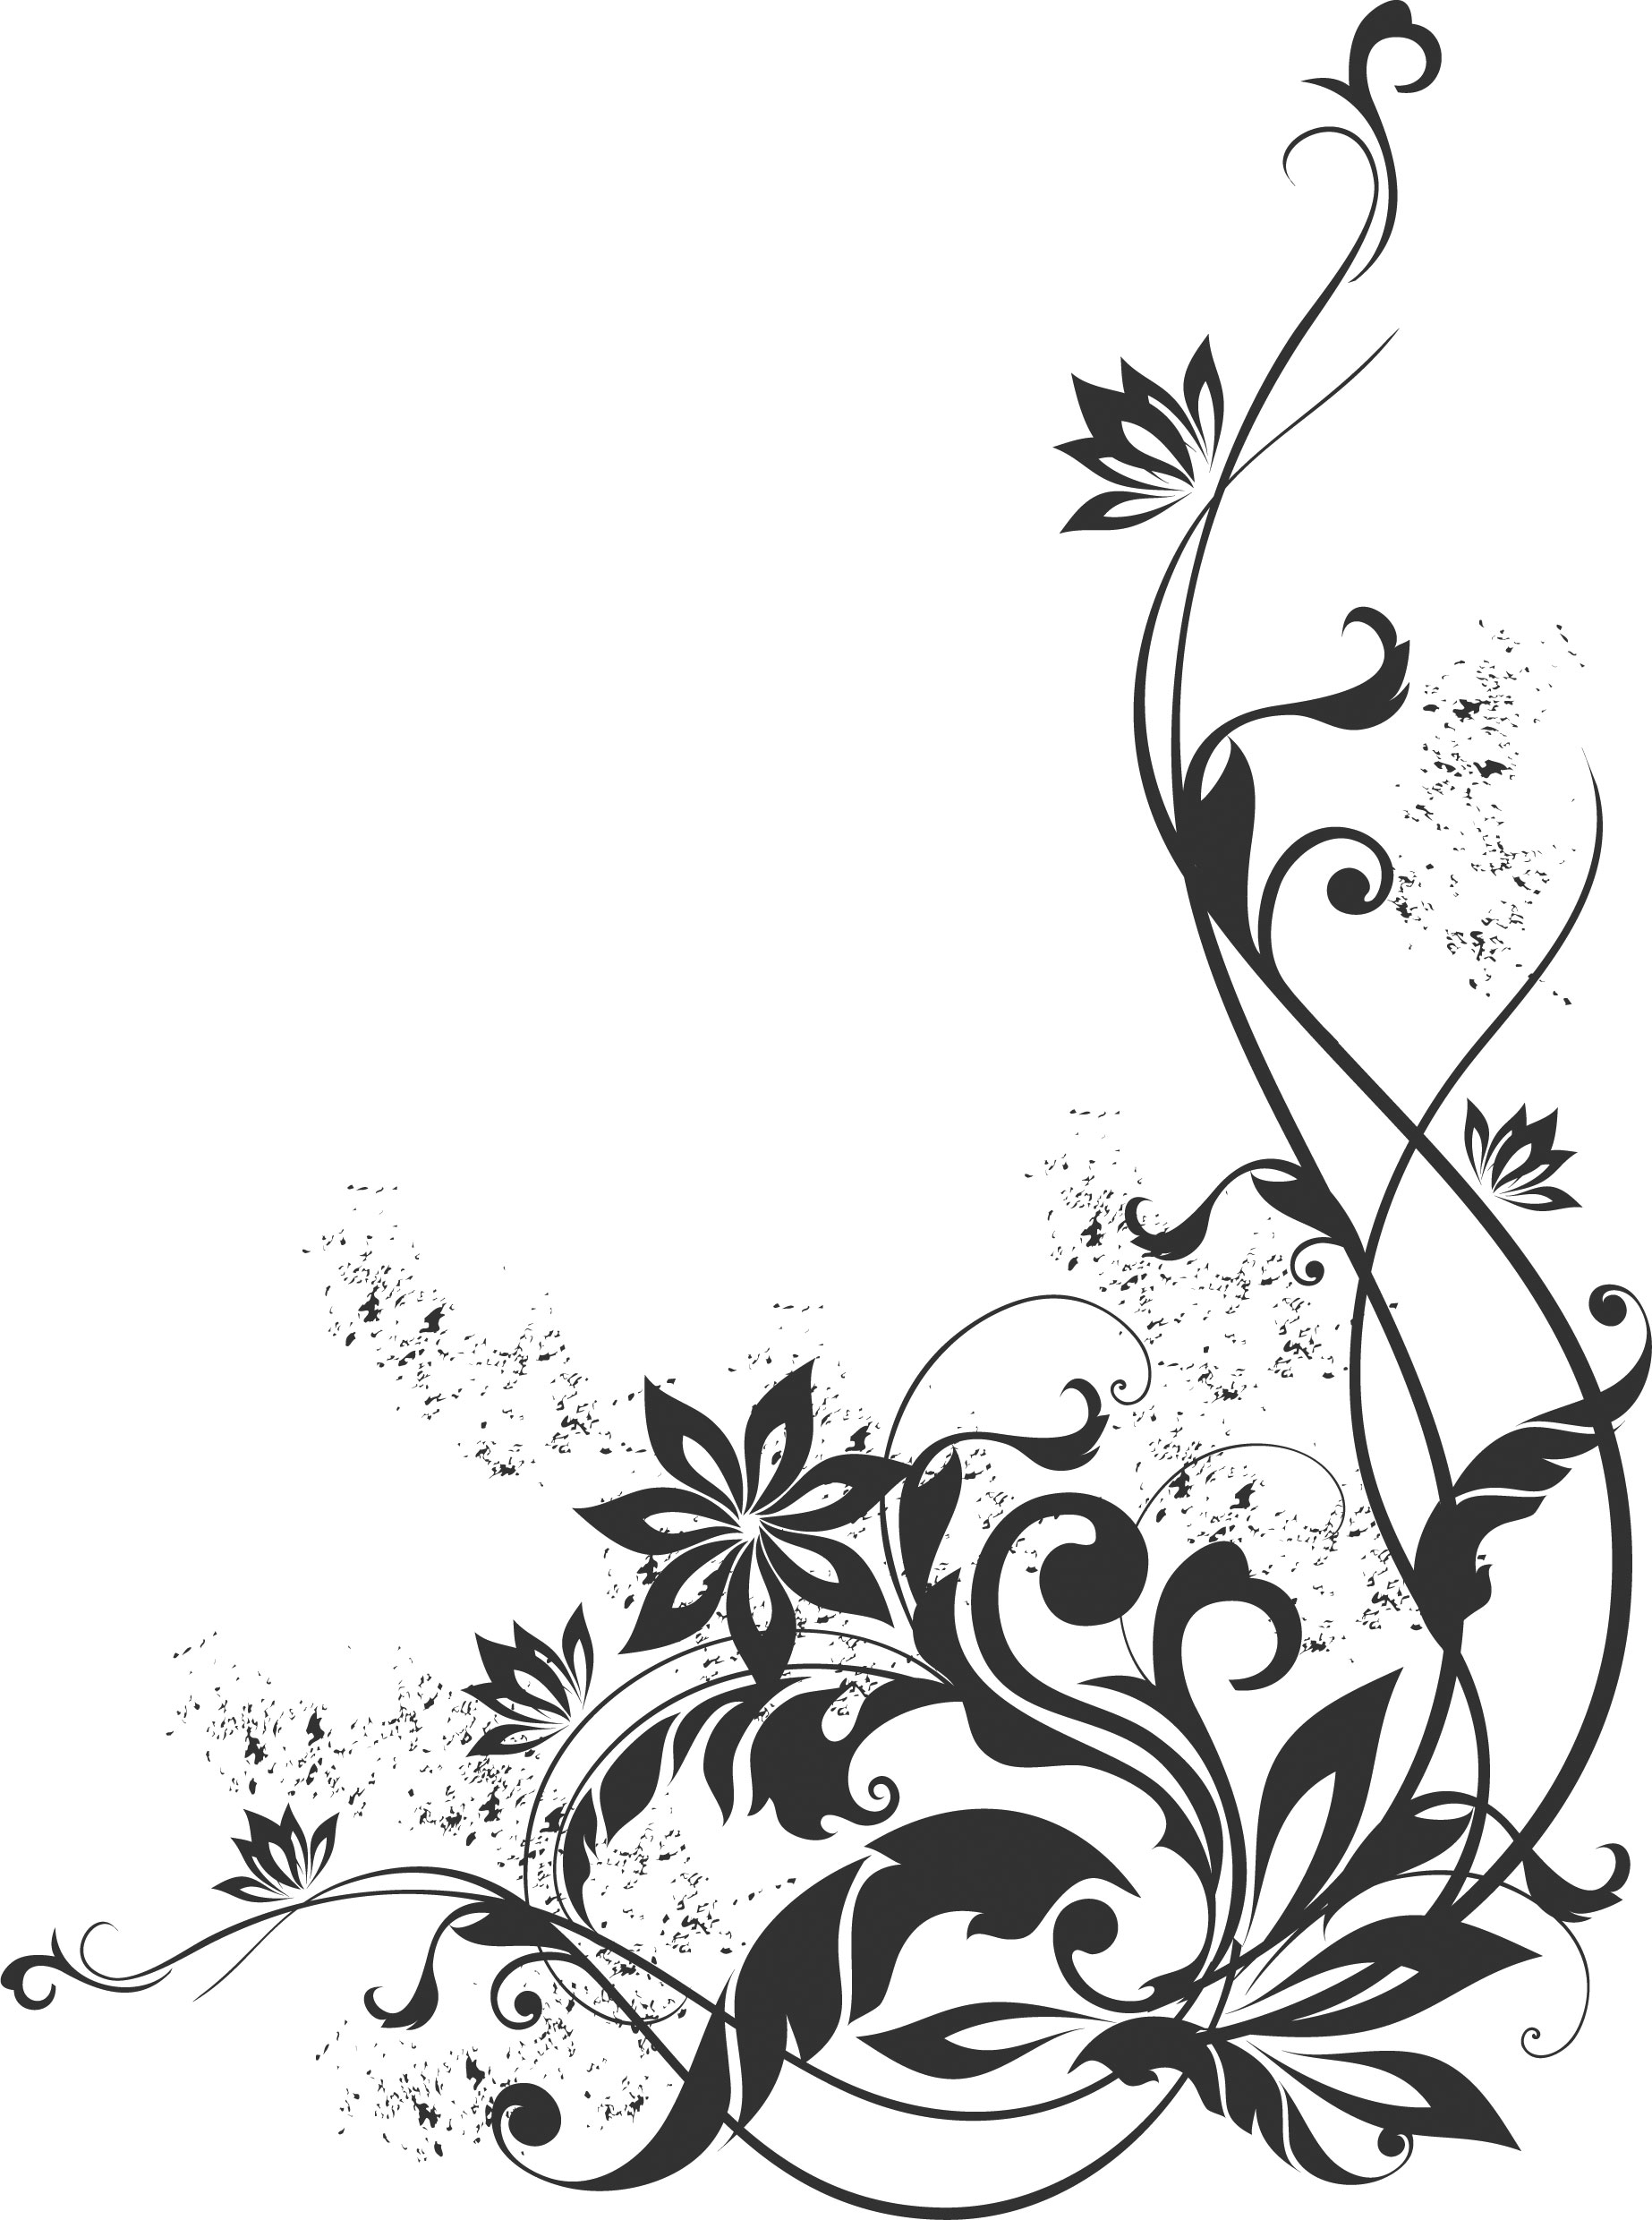 花のイラスト フリー素材 コーナーライン 角 No 137 白黒 蔓葉 コーナー